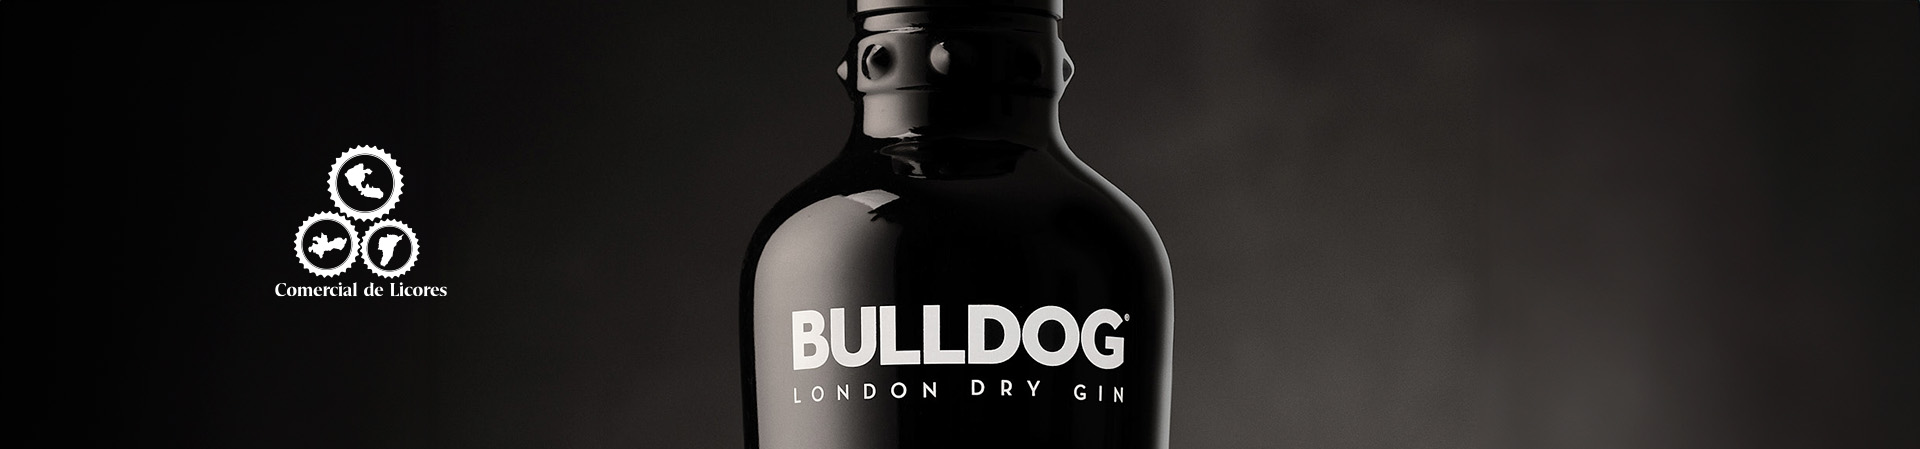 Bulldog_gin_comercial_de_licores